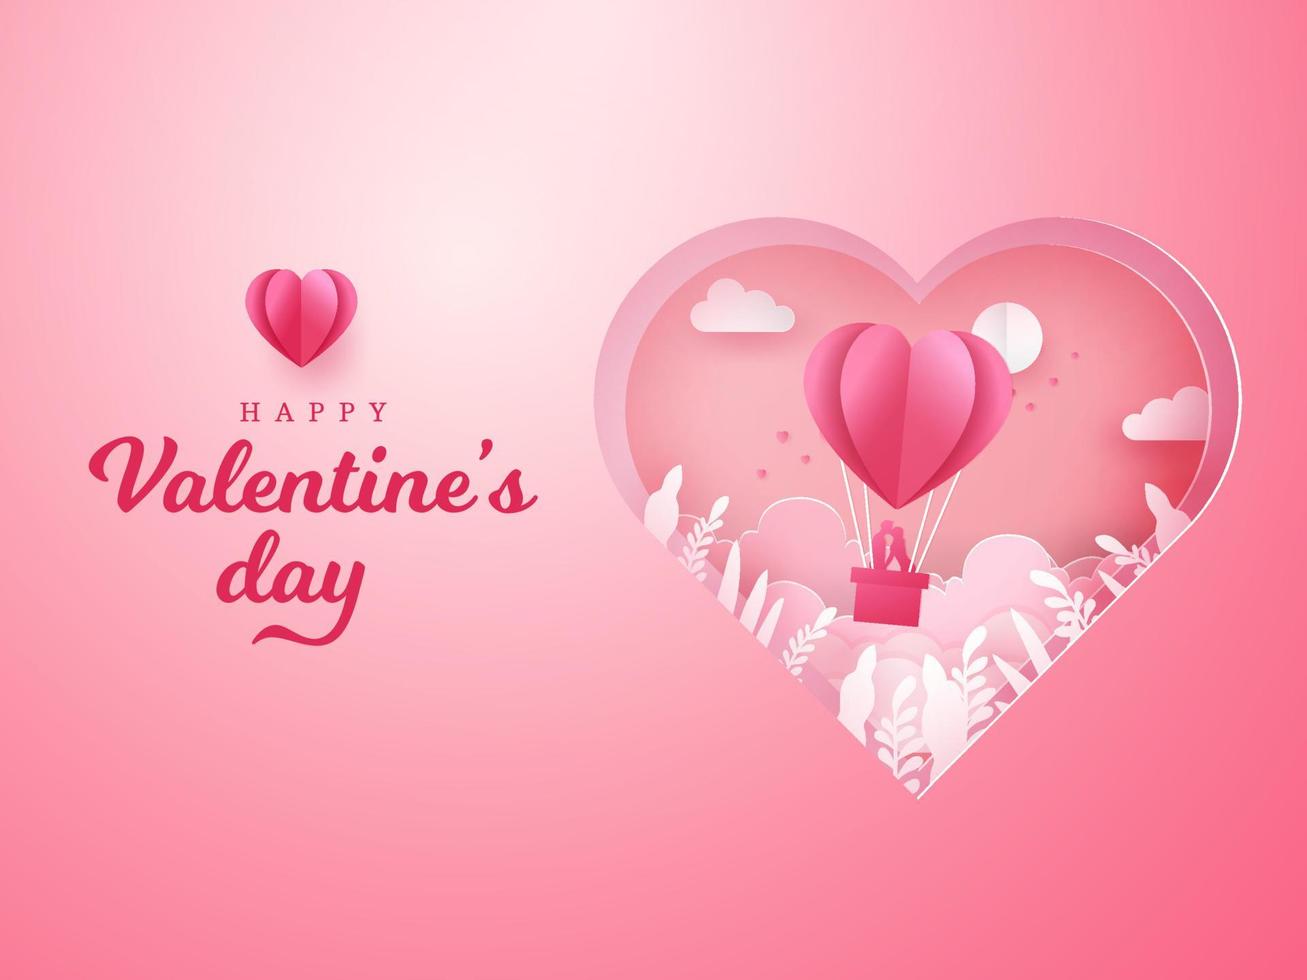 tarjeta de felicitación del día de san valentín. pareja romántica besándose y parada dentro de una canasta de un globo de aire con fondo de corazón tallado vector